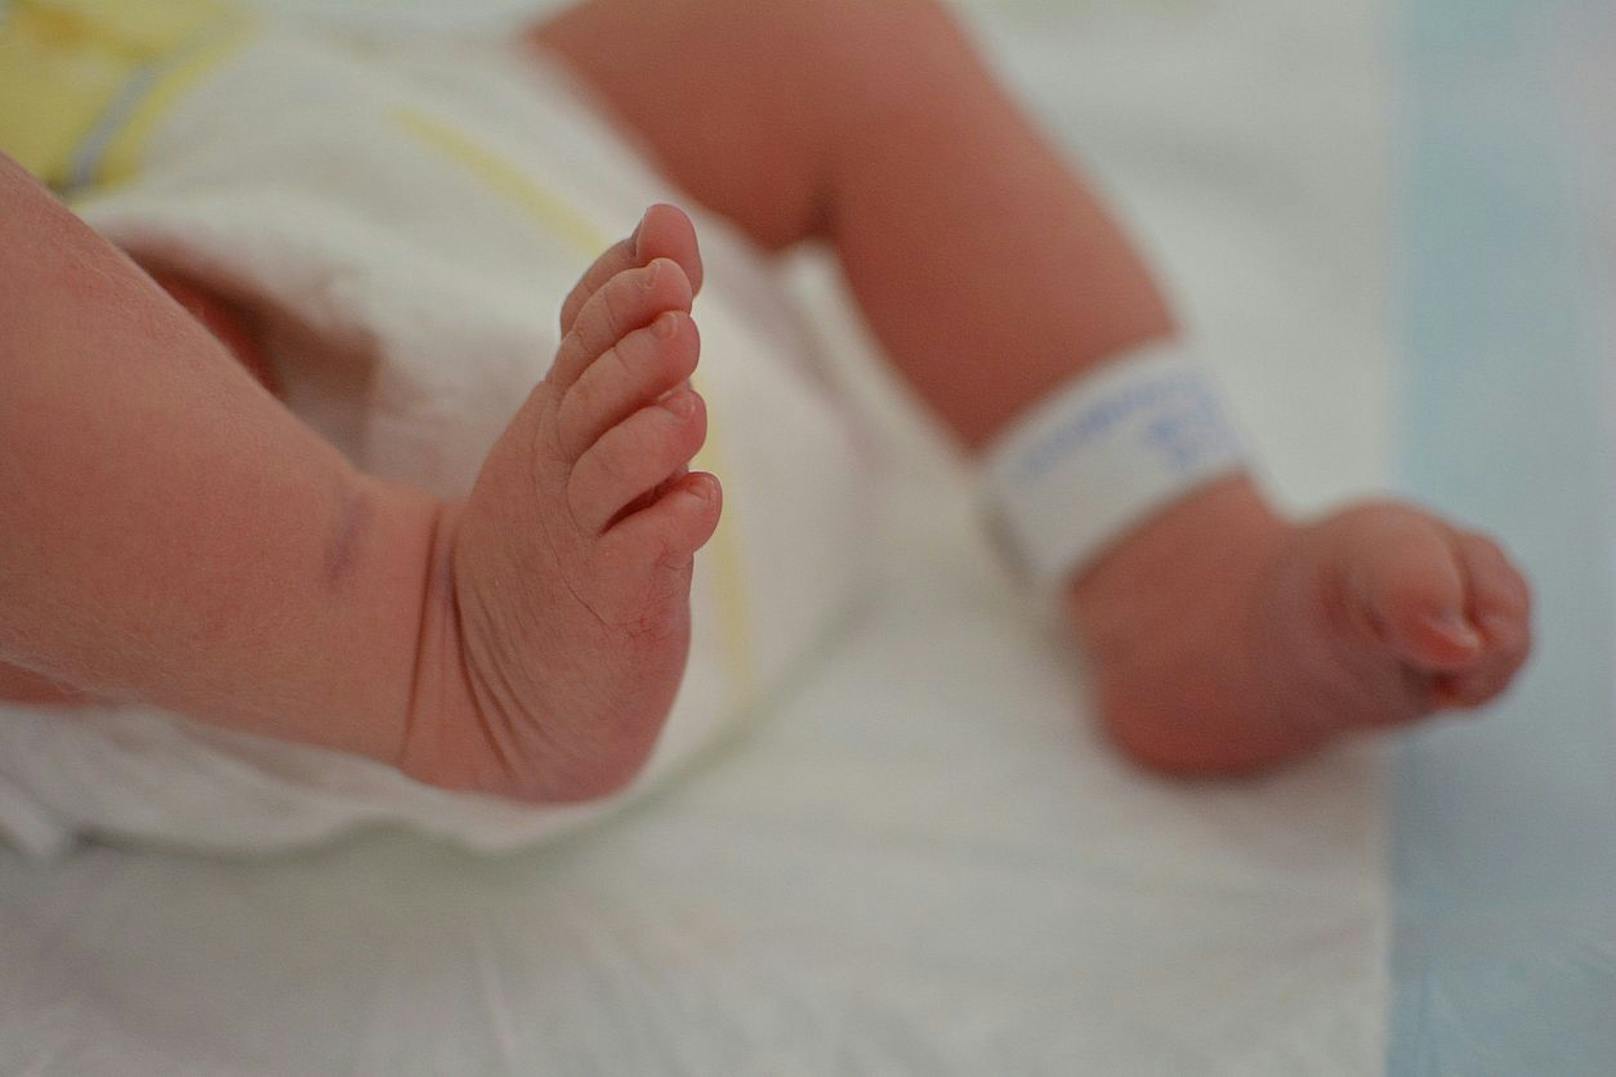 Eine Italienerin hat ihre 17 Monate alte Tochter immer wieder mit Deo besprüht. Das Kleinkind musste eine Reihe von Hautverletzungen erleiden. (Symbolbild).&nbsp;